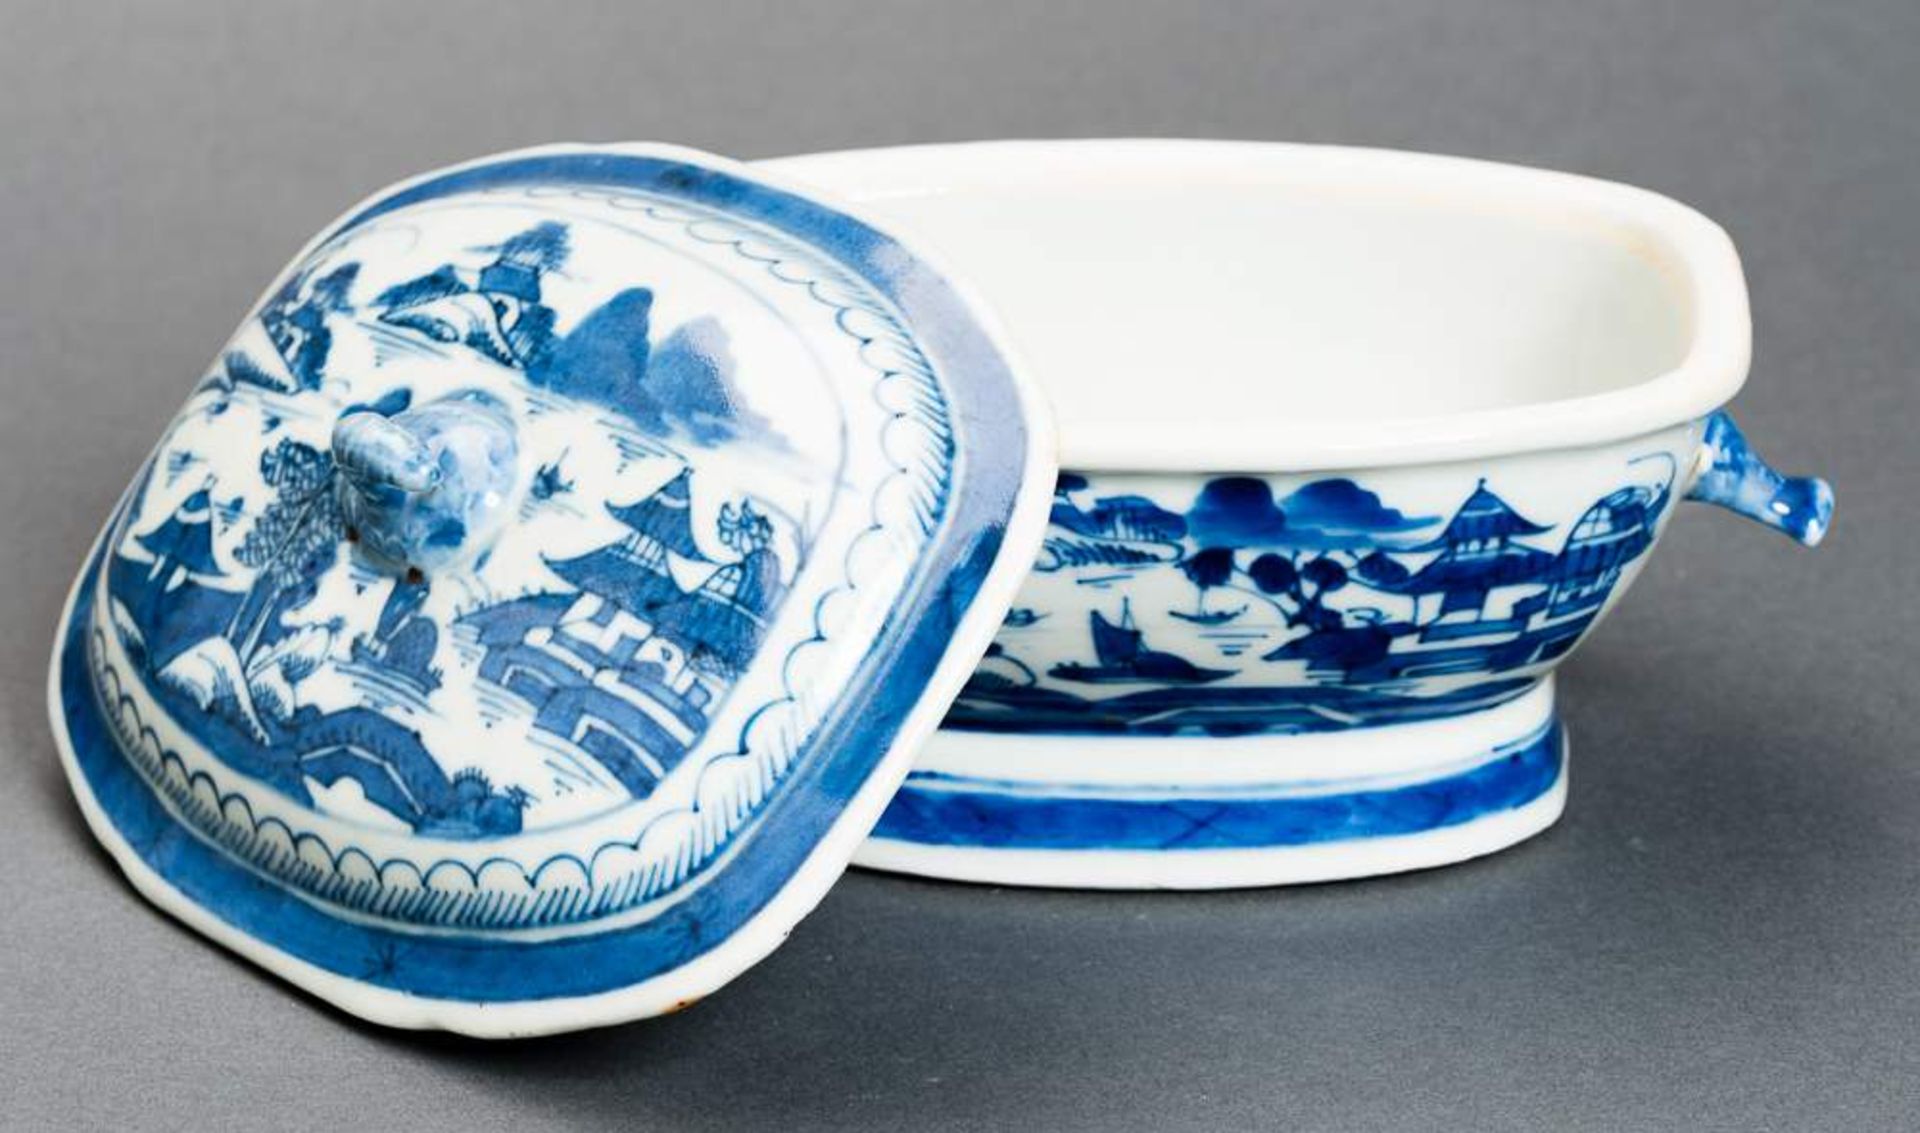 DECKELSCHALE Blauweiß-Porzellan. China, Qing-Dynastie, 19. Jh. Diese sehr ansprechende oval- - Image 11 of 11